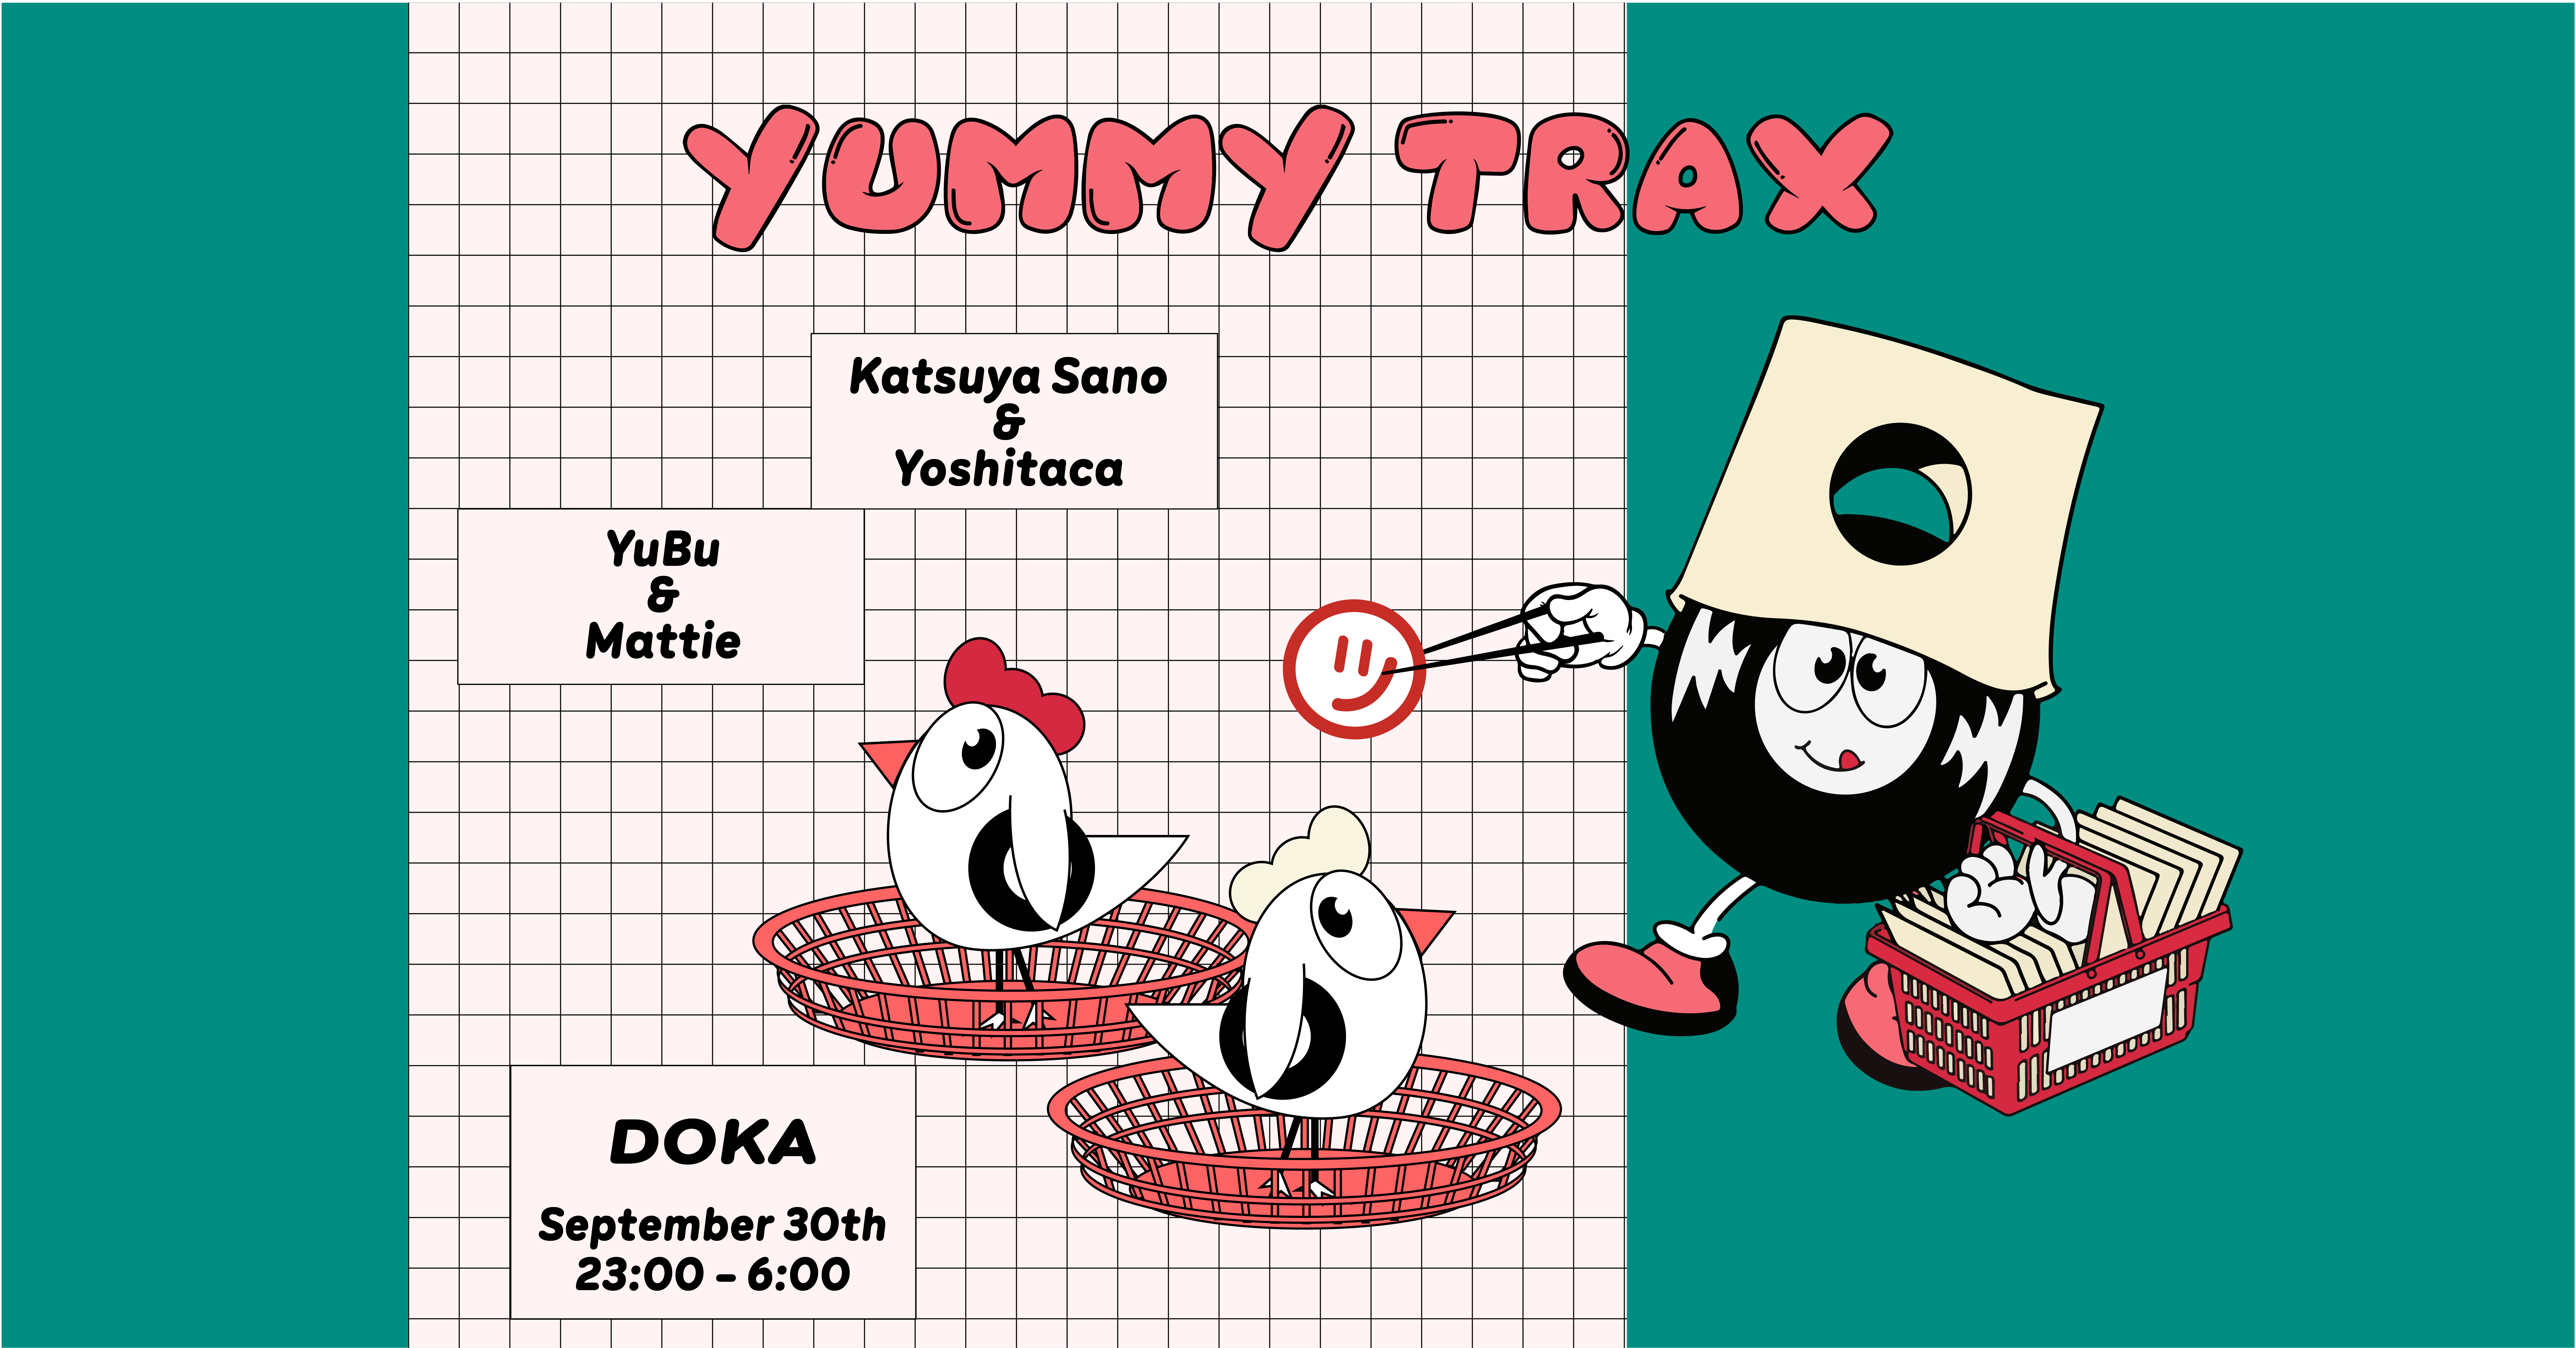 Yummy Trax with Katsuya Sano & Yoshitaca - フライヤー表